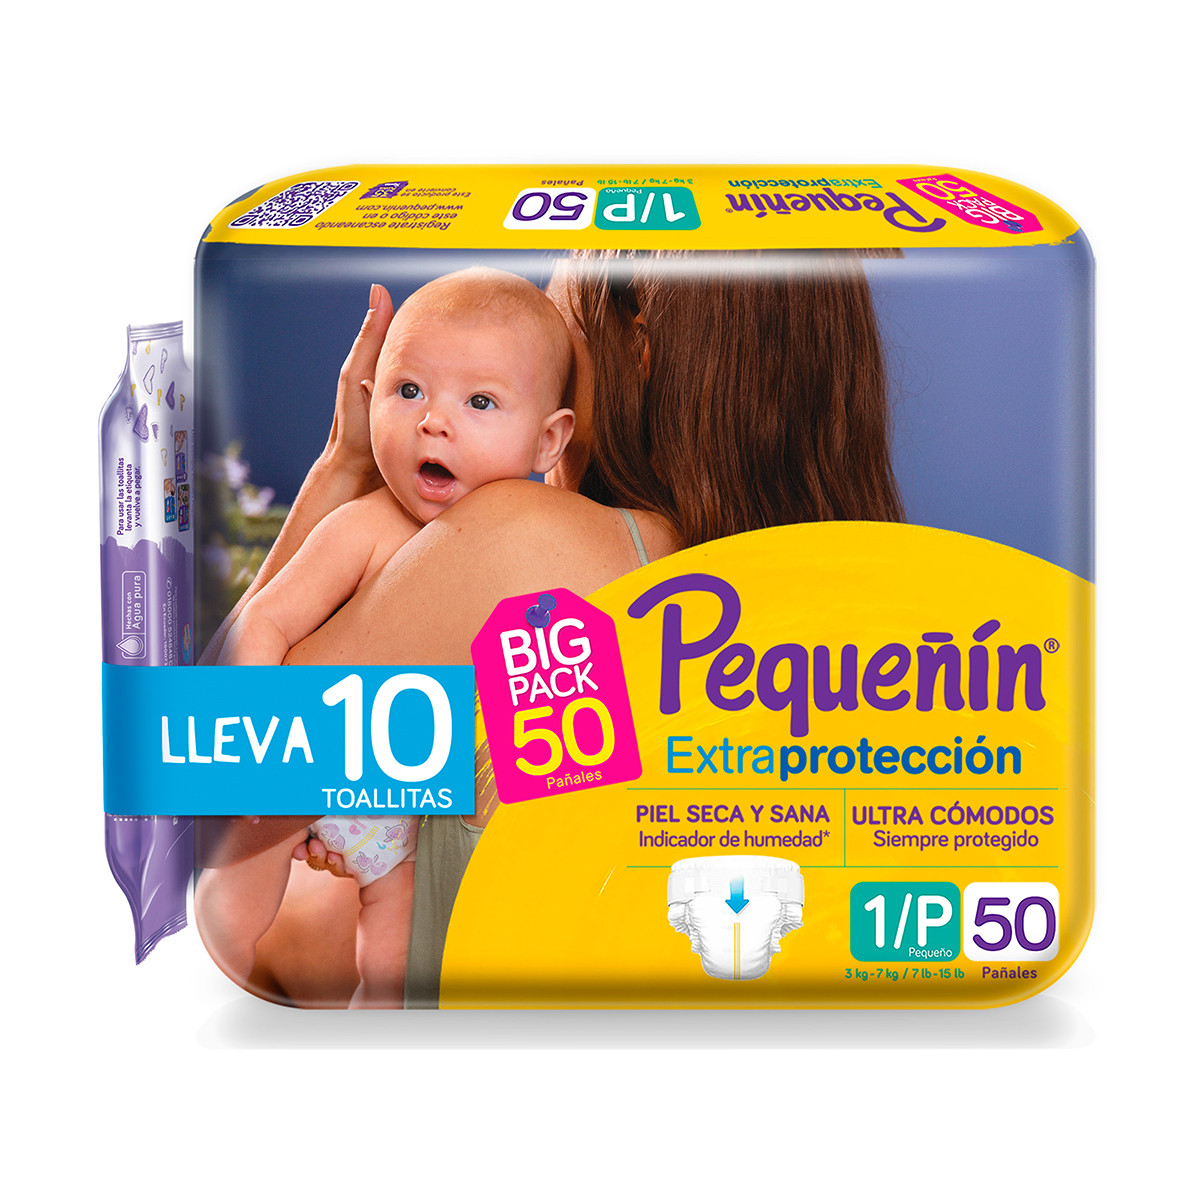 Imagen Pañales Pequeñín Extraprotección Etapa 1 x 50 und + Toallitas Recién Nacido x 10 und 1